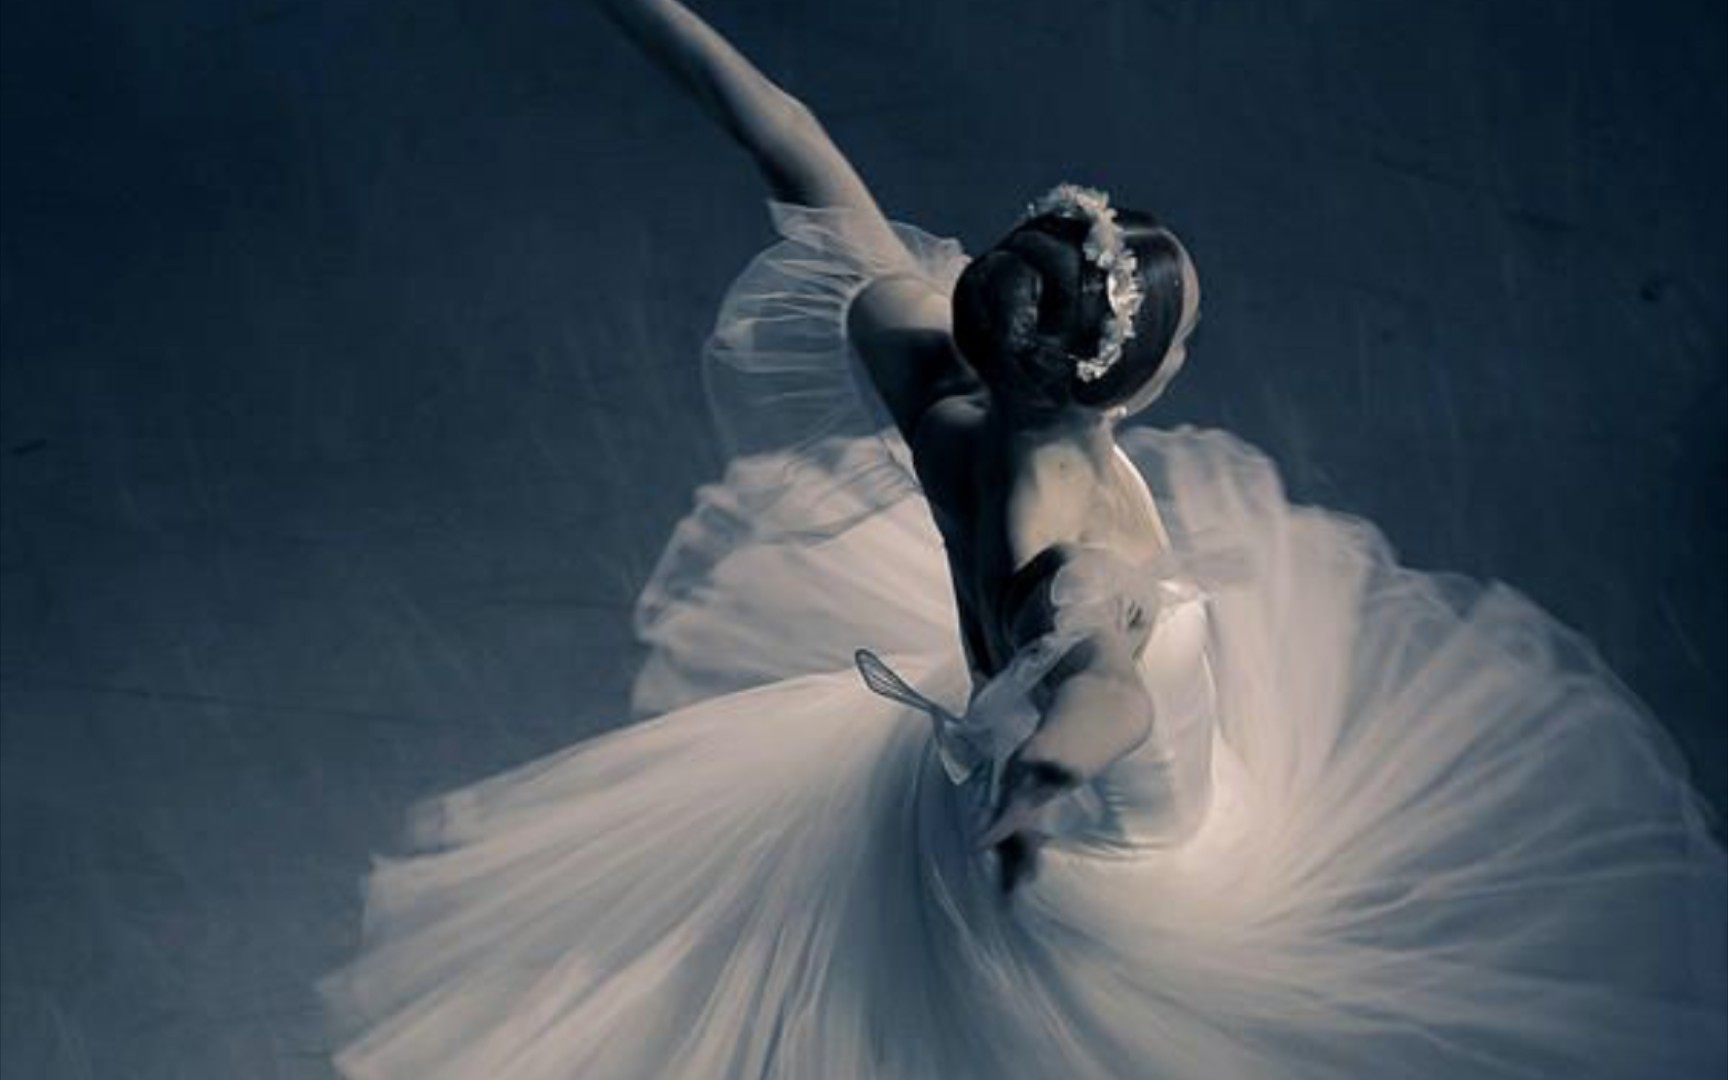 芭蕾如梦似幻的浪漫主义经典吉赛尔二幕薇莉独舞moynamonna独舞小合集